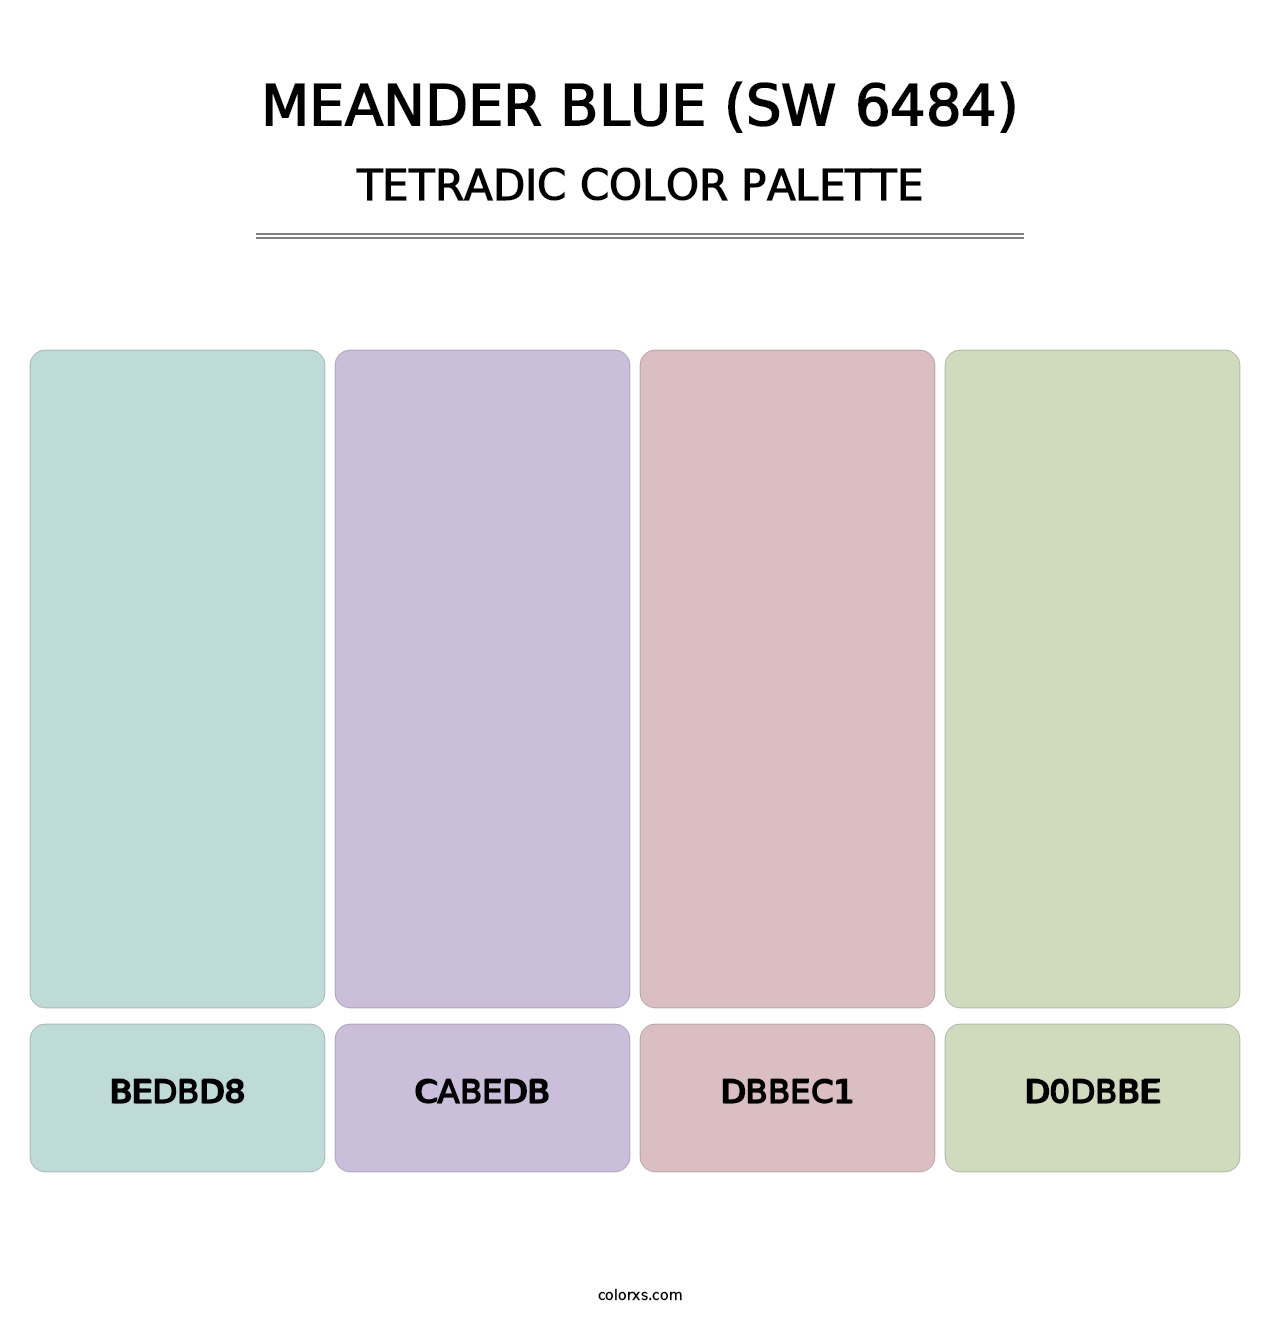 Meander Blue (SW 6484) - Tetradic Color Palette